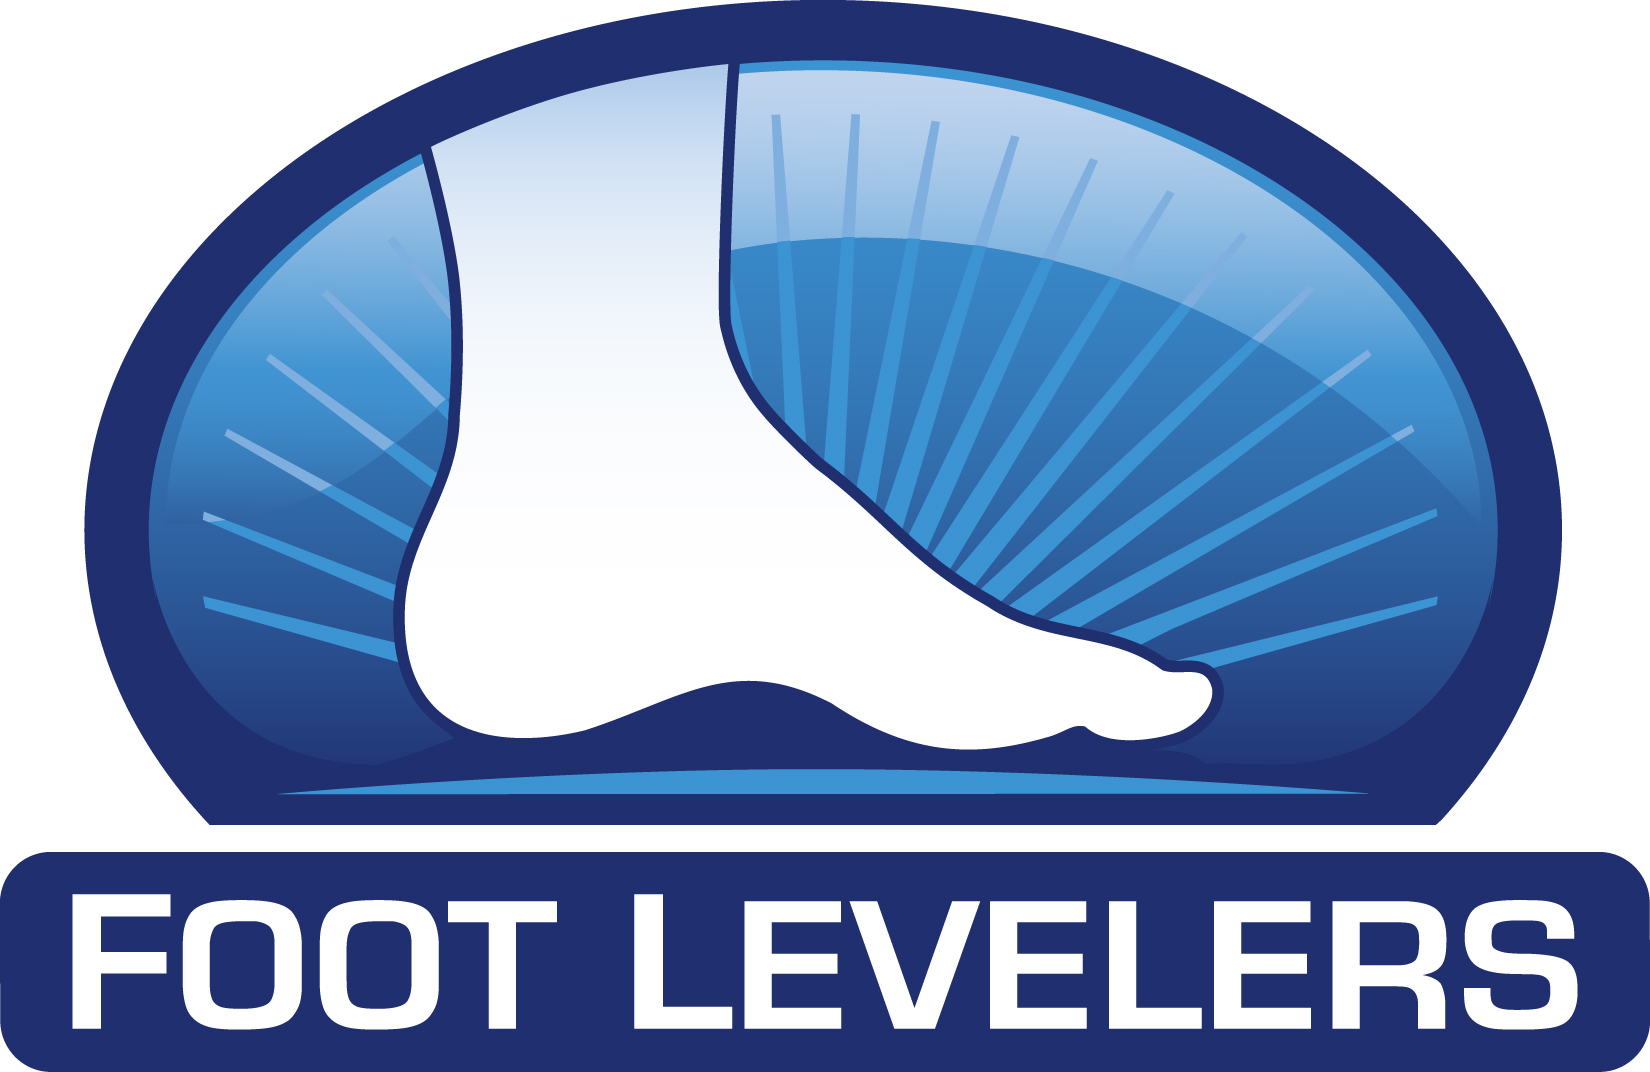 Foot-levelers.jpg